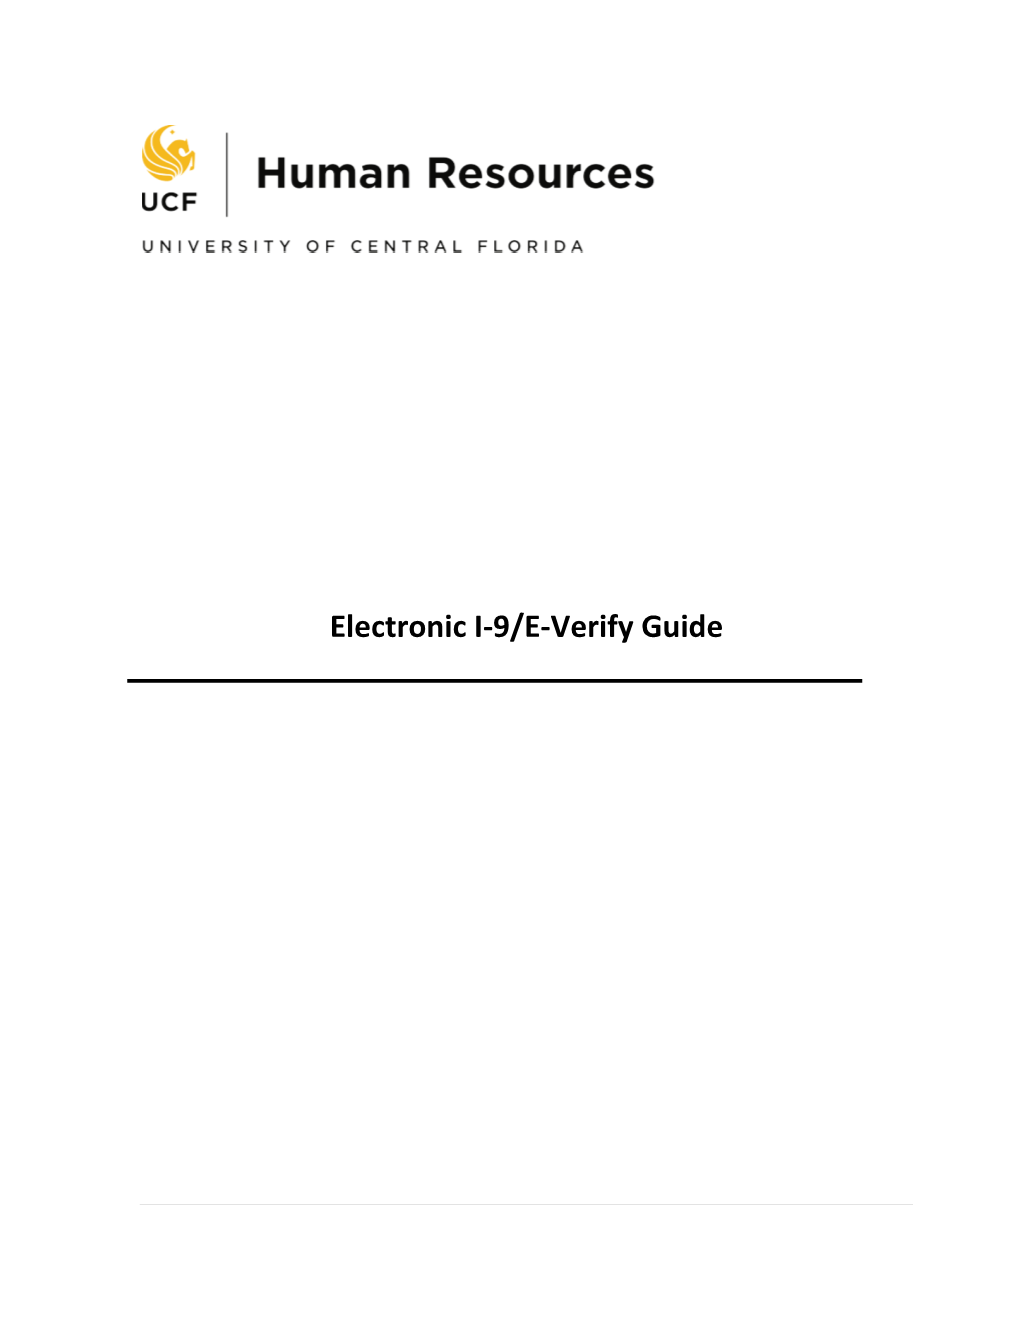 Electronic I-9/E-Verify Guide